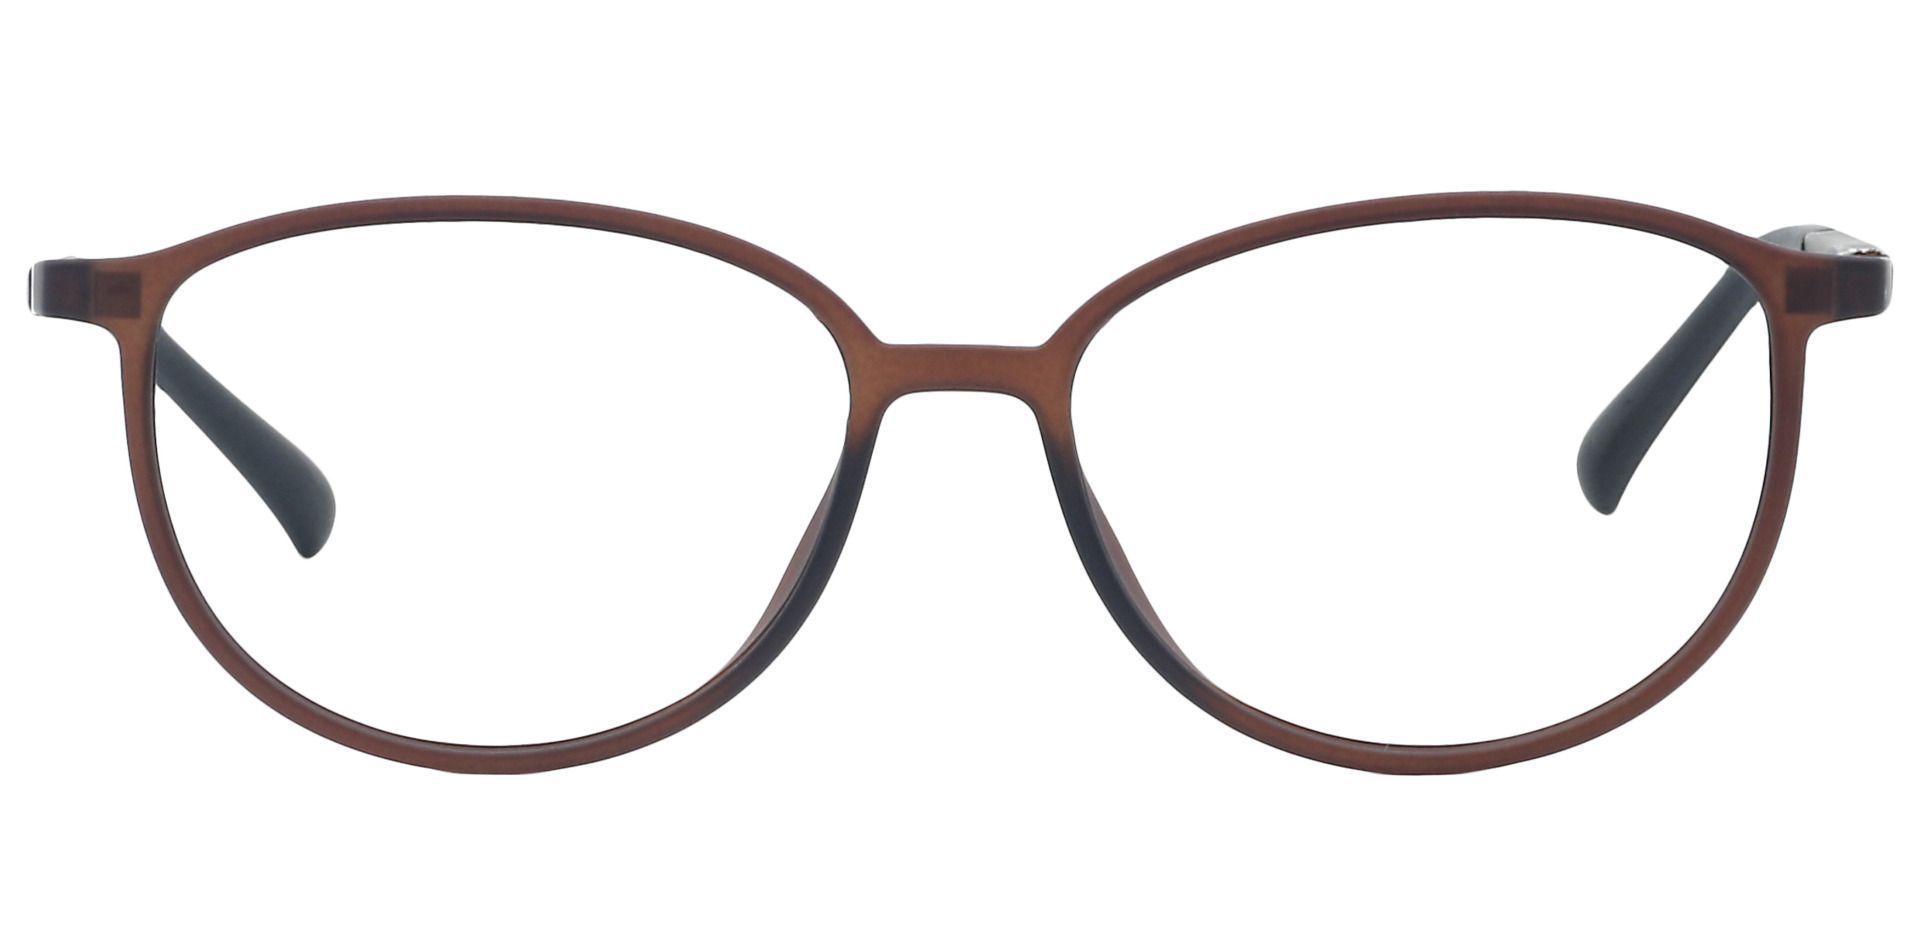 Melbourne Oval Prescription Glasses - Brown